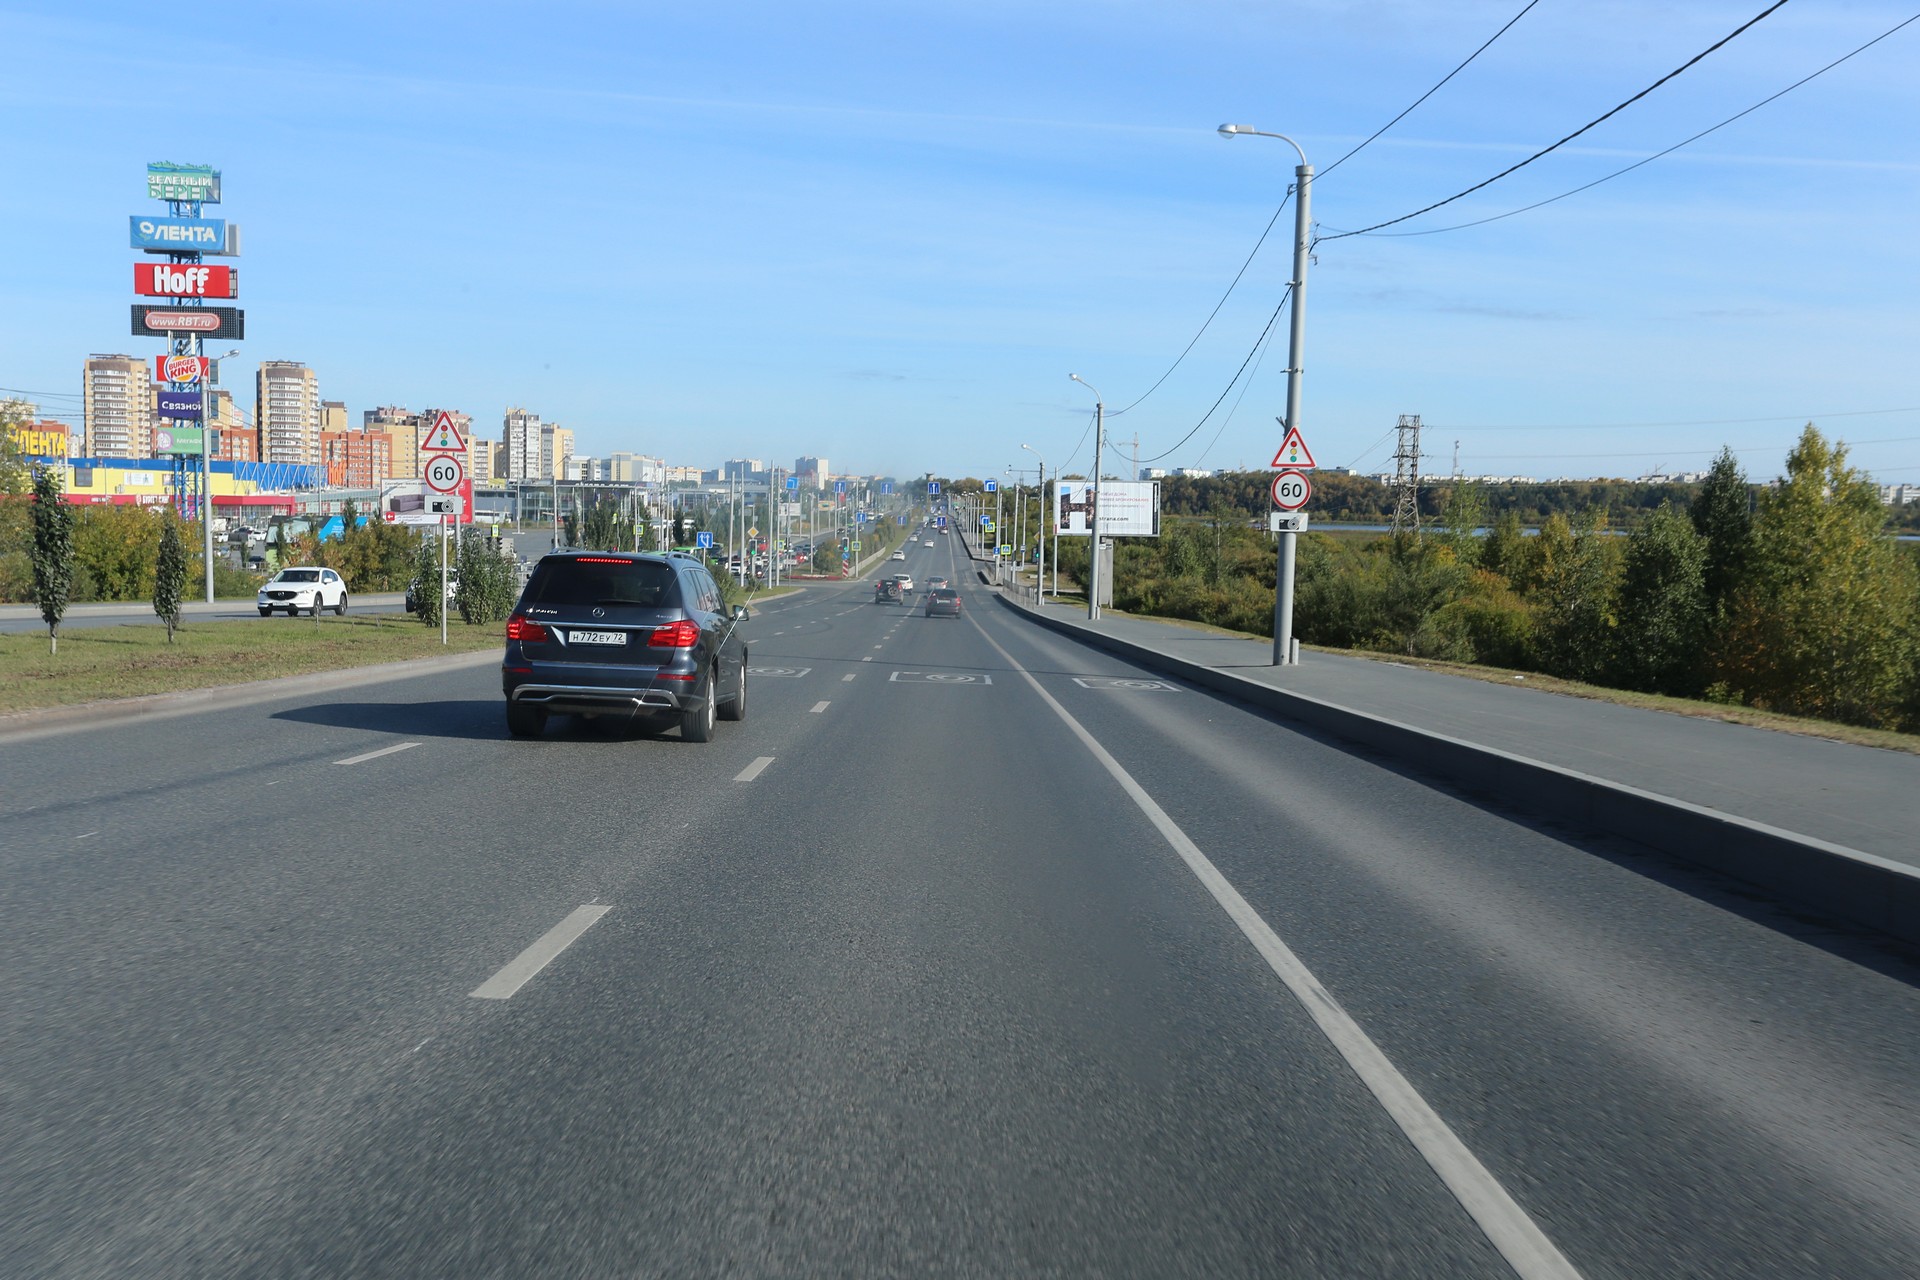 Дорожный рейтинг ОНФ: где в России лучшие и худшие дороги